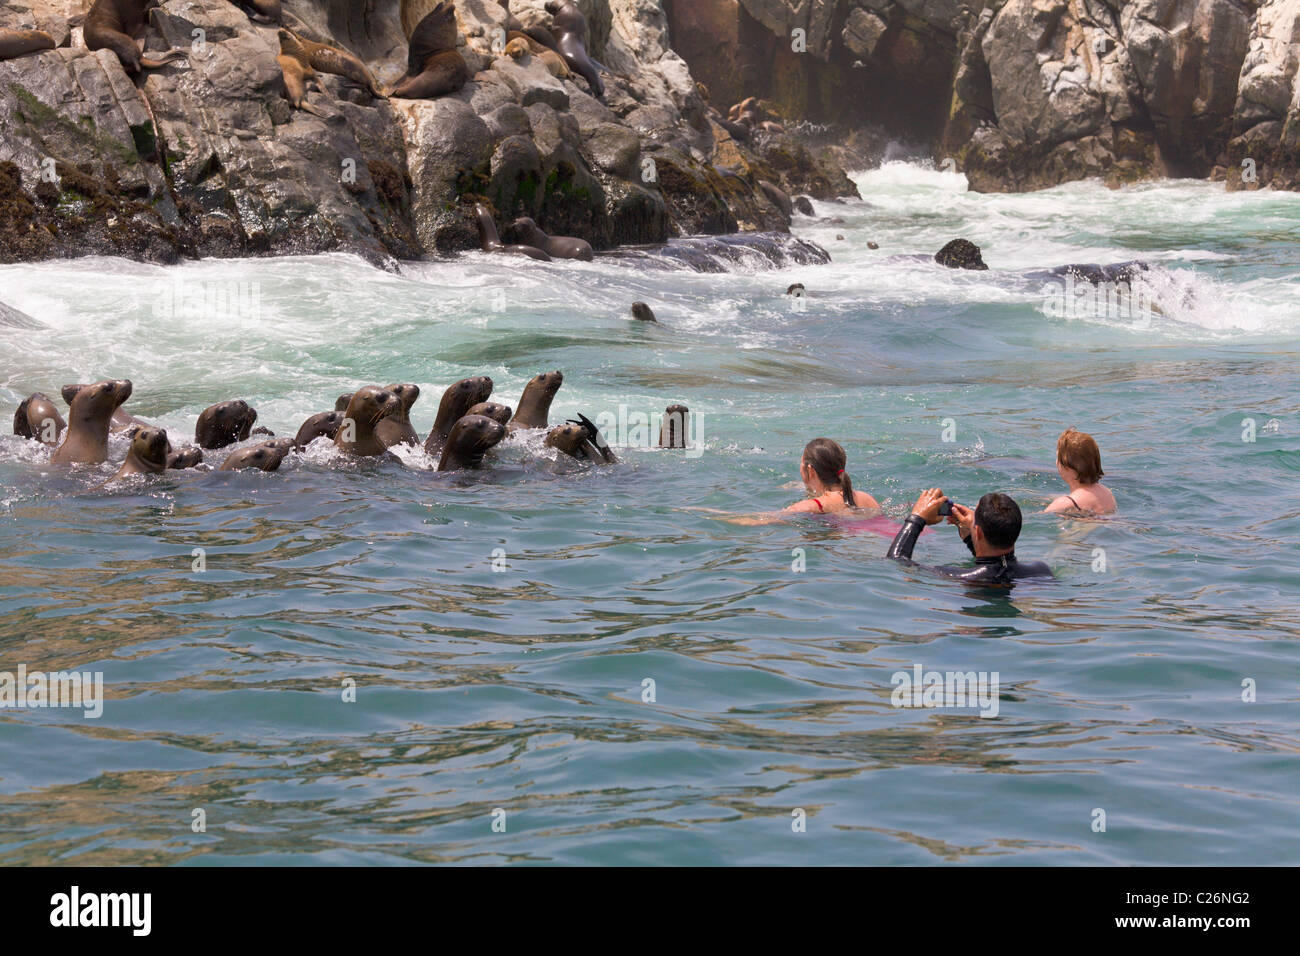 Los turistas nadar con leones marinos, Islas Palomino, Callao, Lima, Perú. Foto de stock